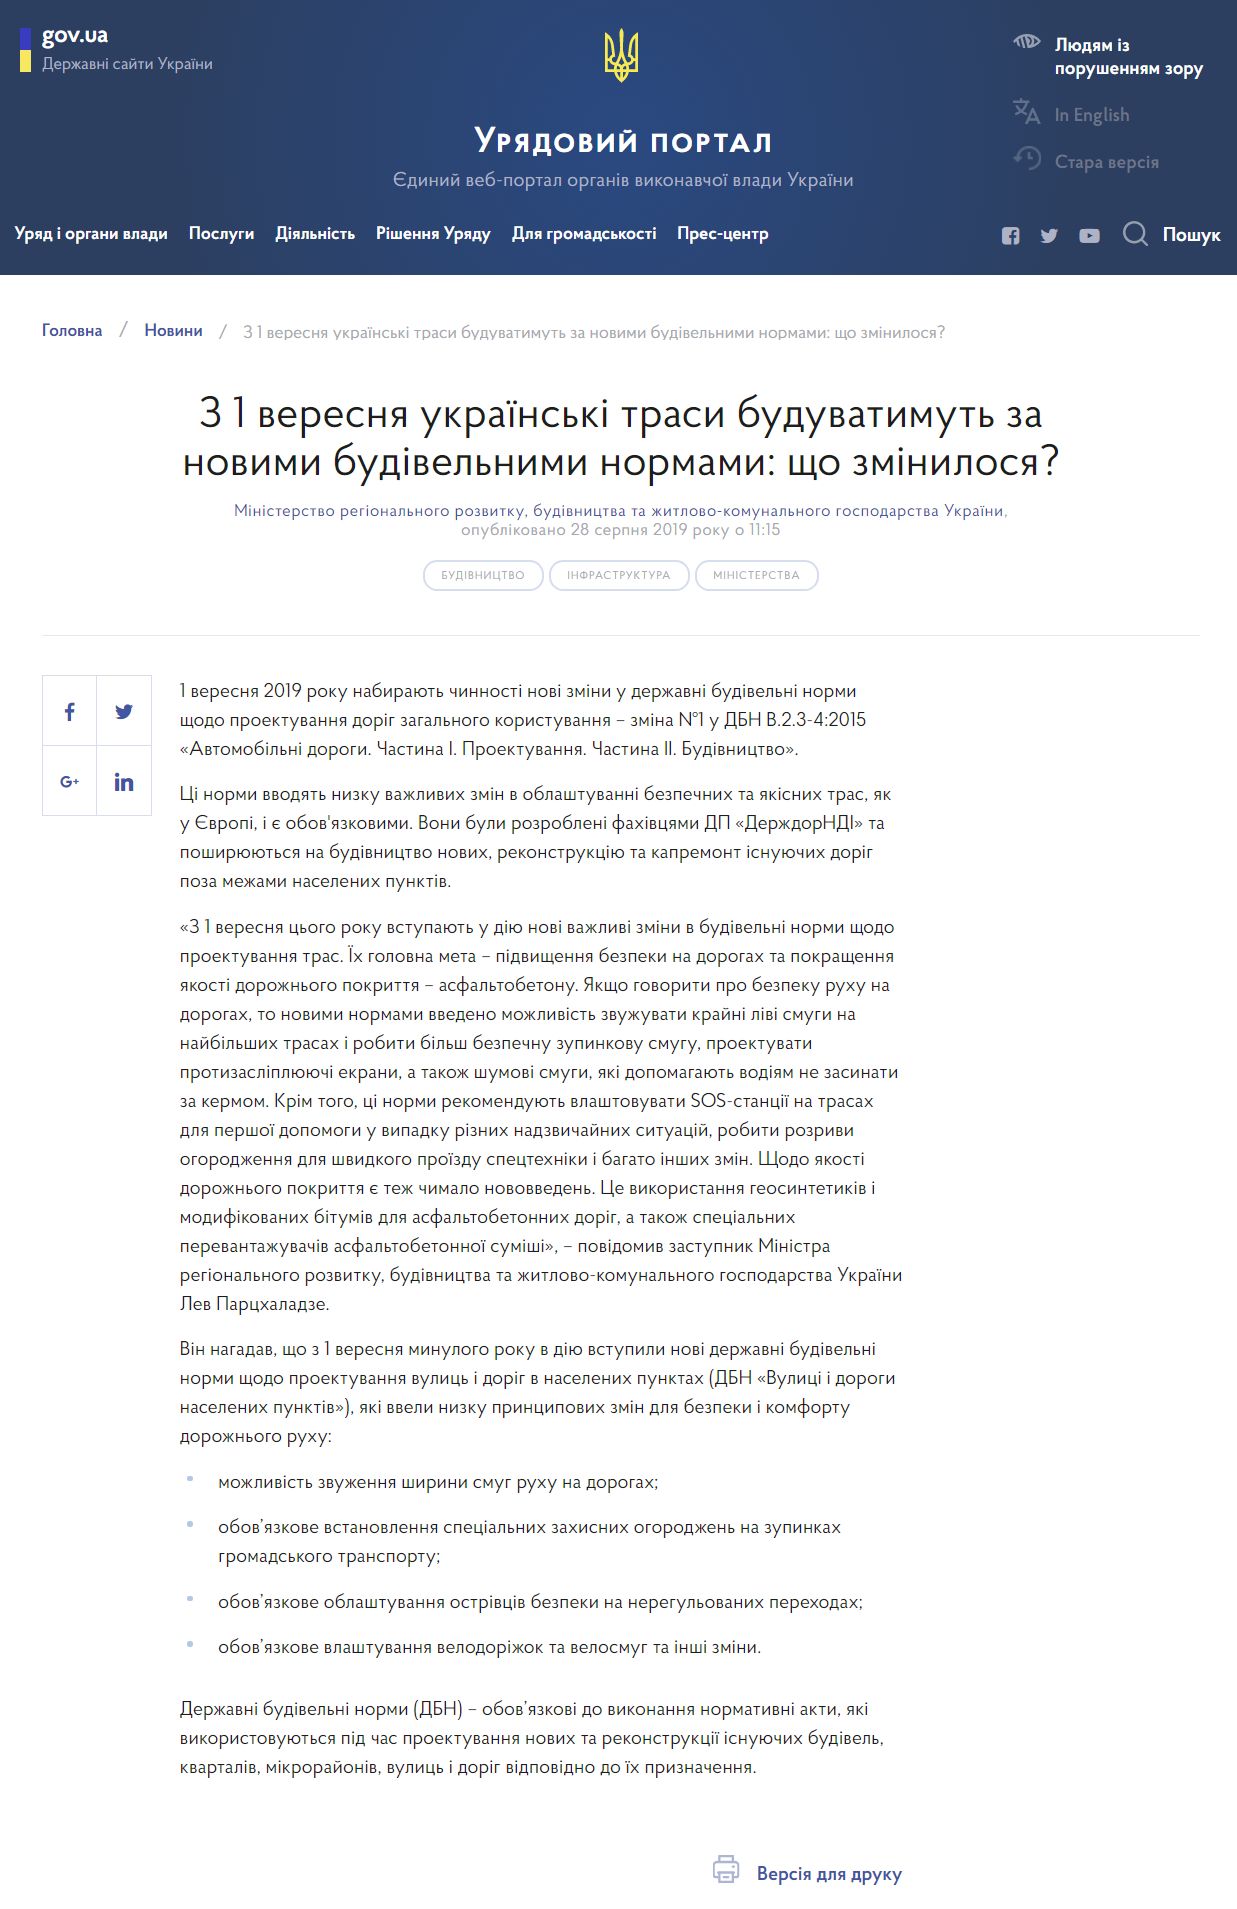 https://www.kmu.gov.ua/news/z-1-veresnya-ukrayinski-trasi-buduvatimut-za-novimi-budivelnimi-normami-shcho-zminilosya